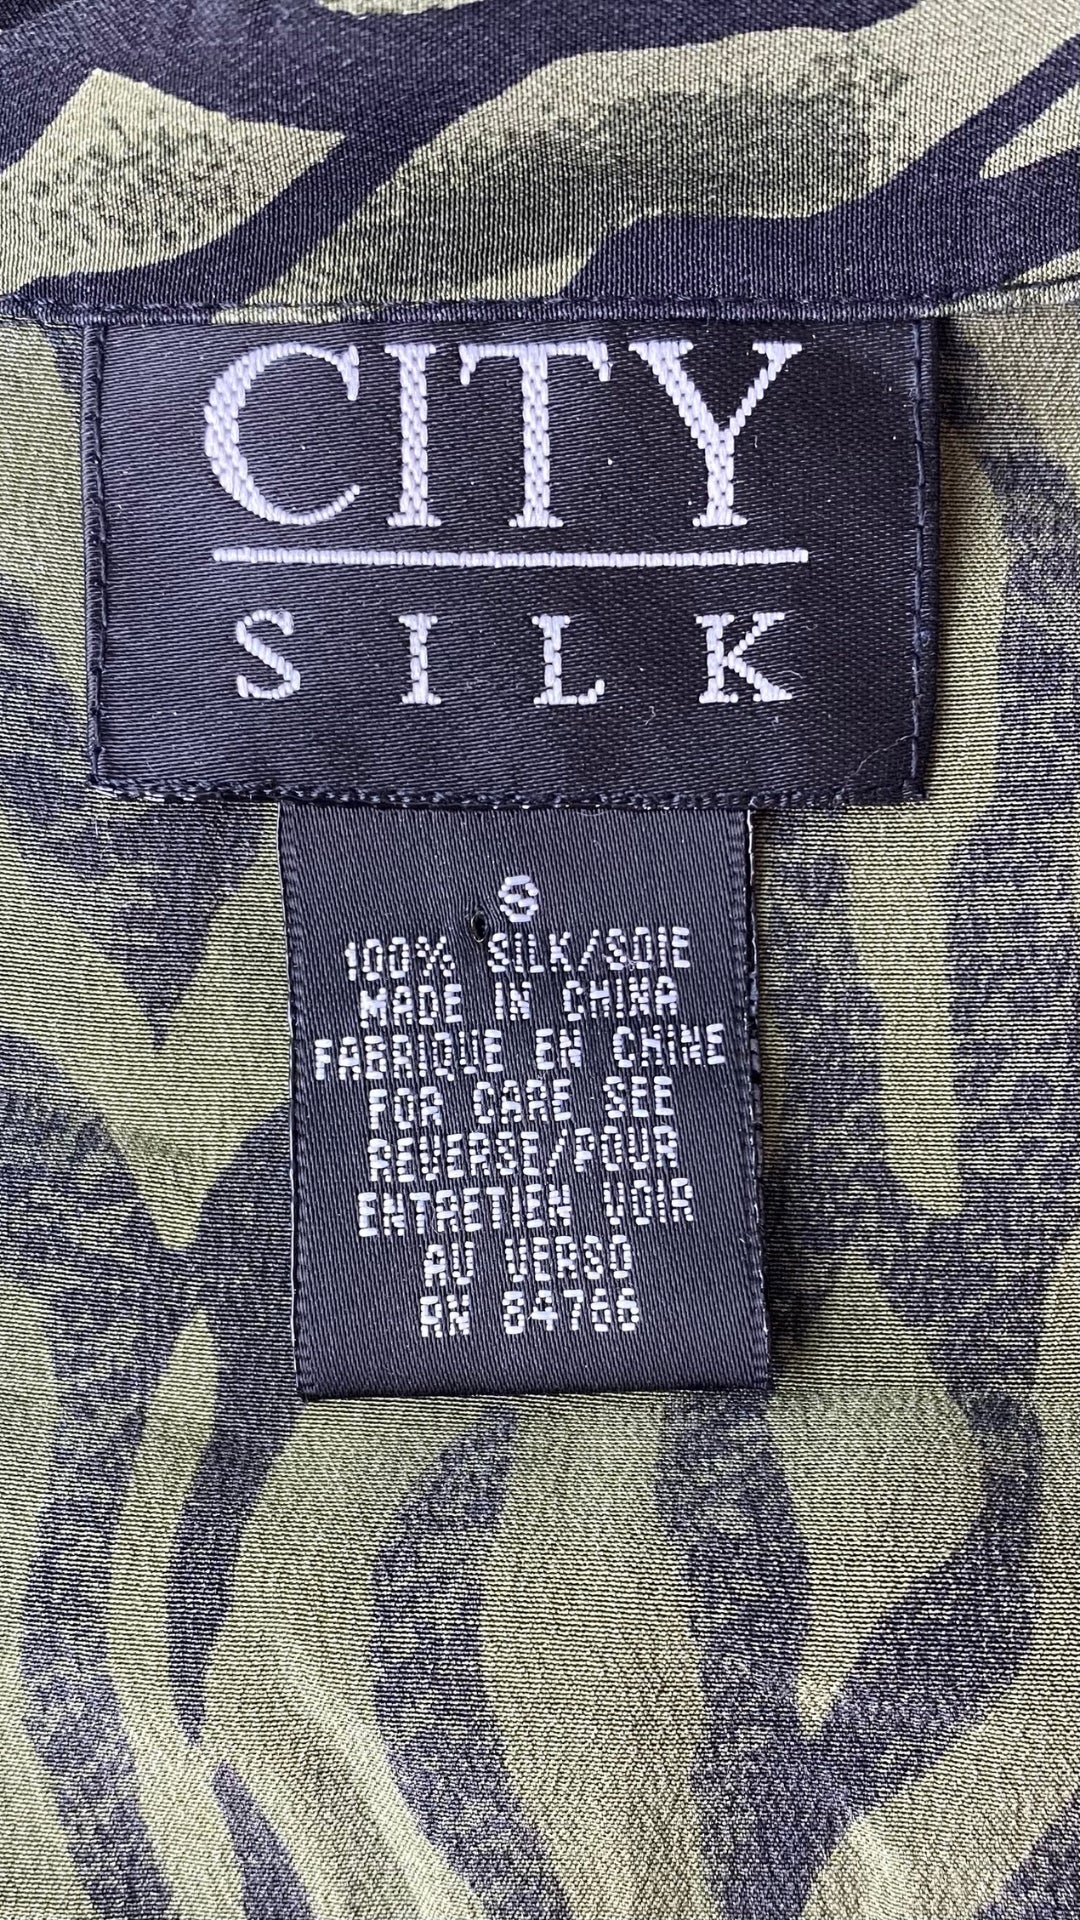 Chemisier en soie à zébrures vertes et noires City Silk, taille small (xs). Vue de l'étiquette de marque, taille et composition.